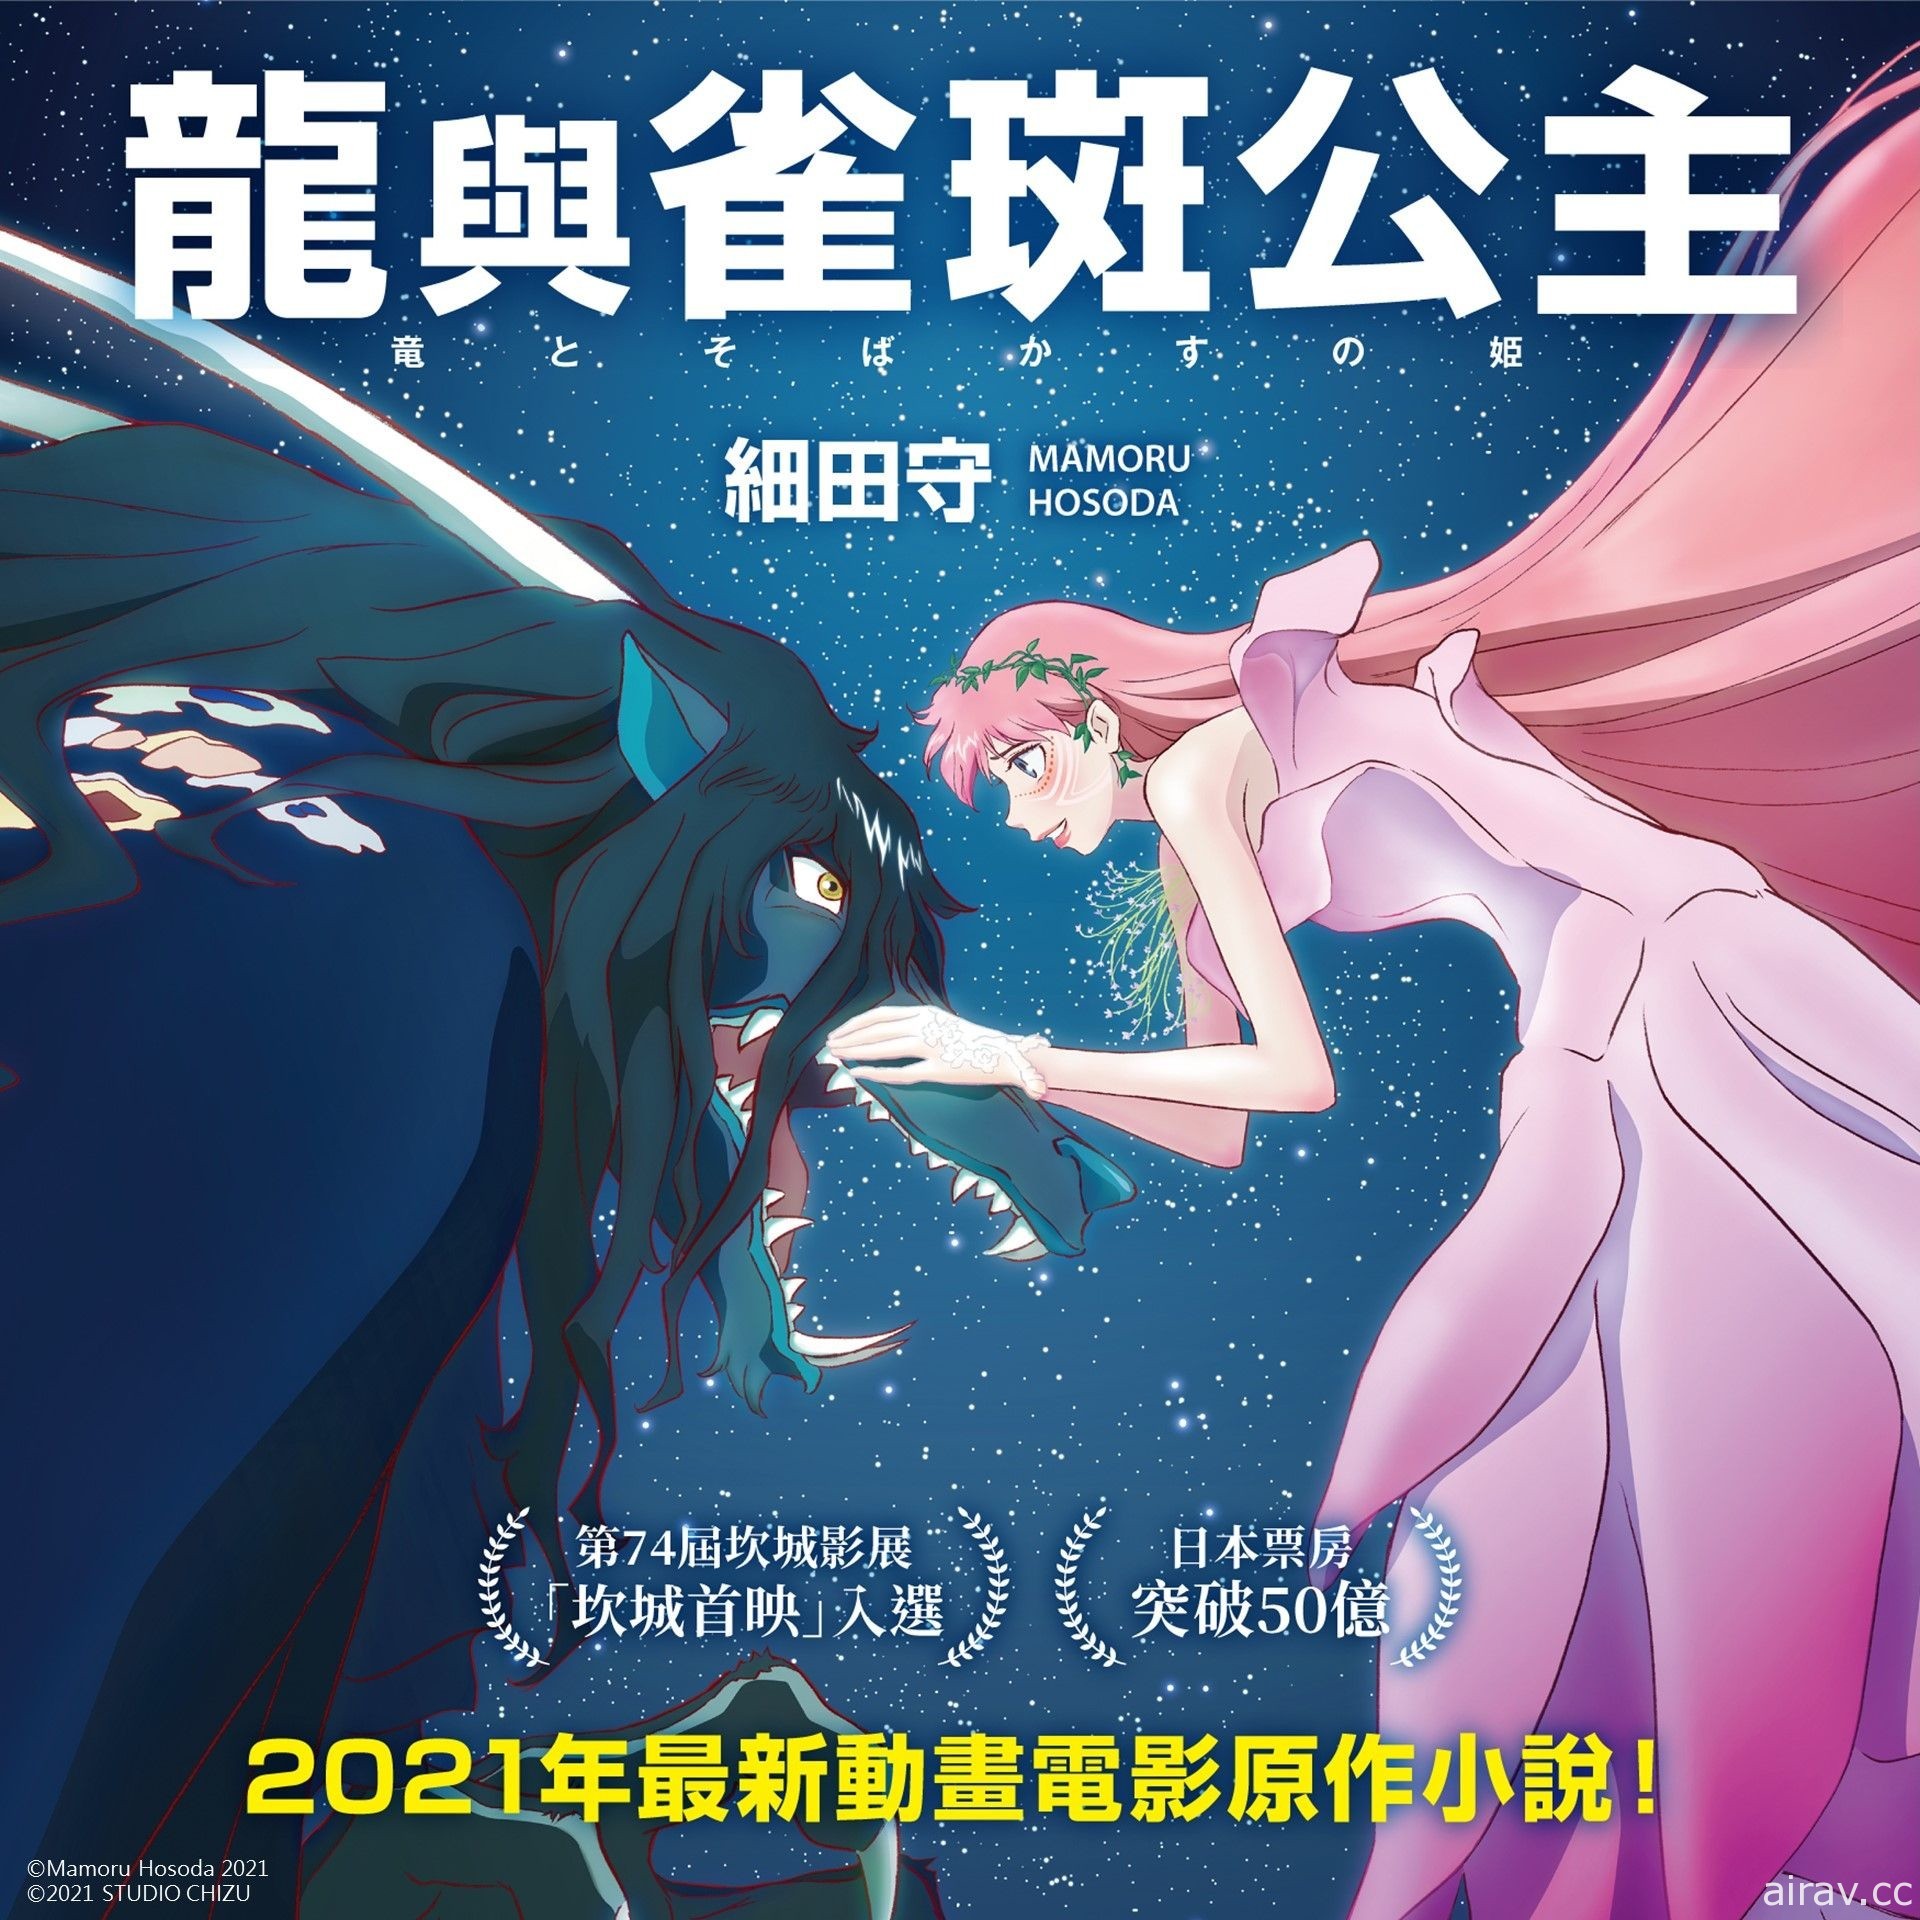 《龍與雀斑公主》原著小說 10 月 7 日在台上市